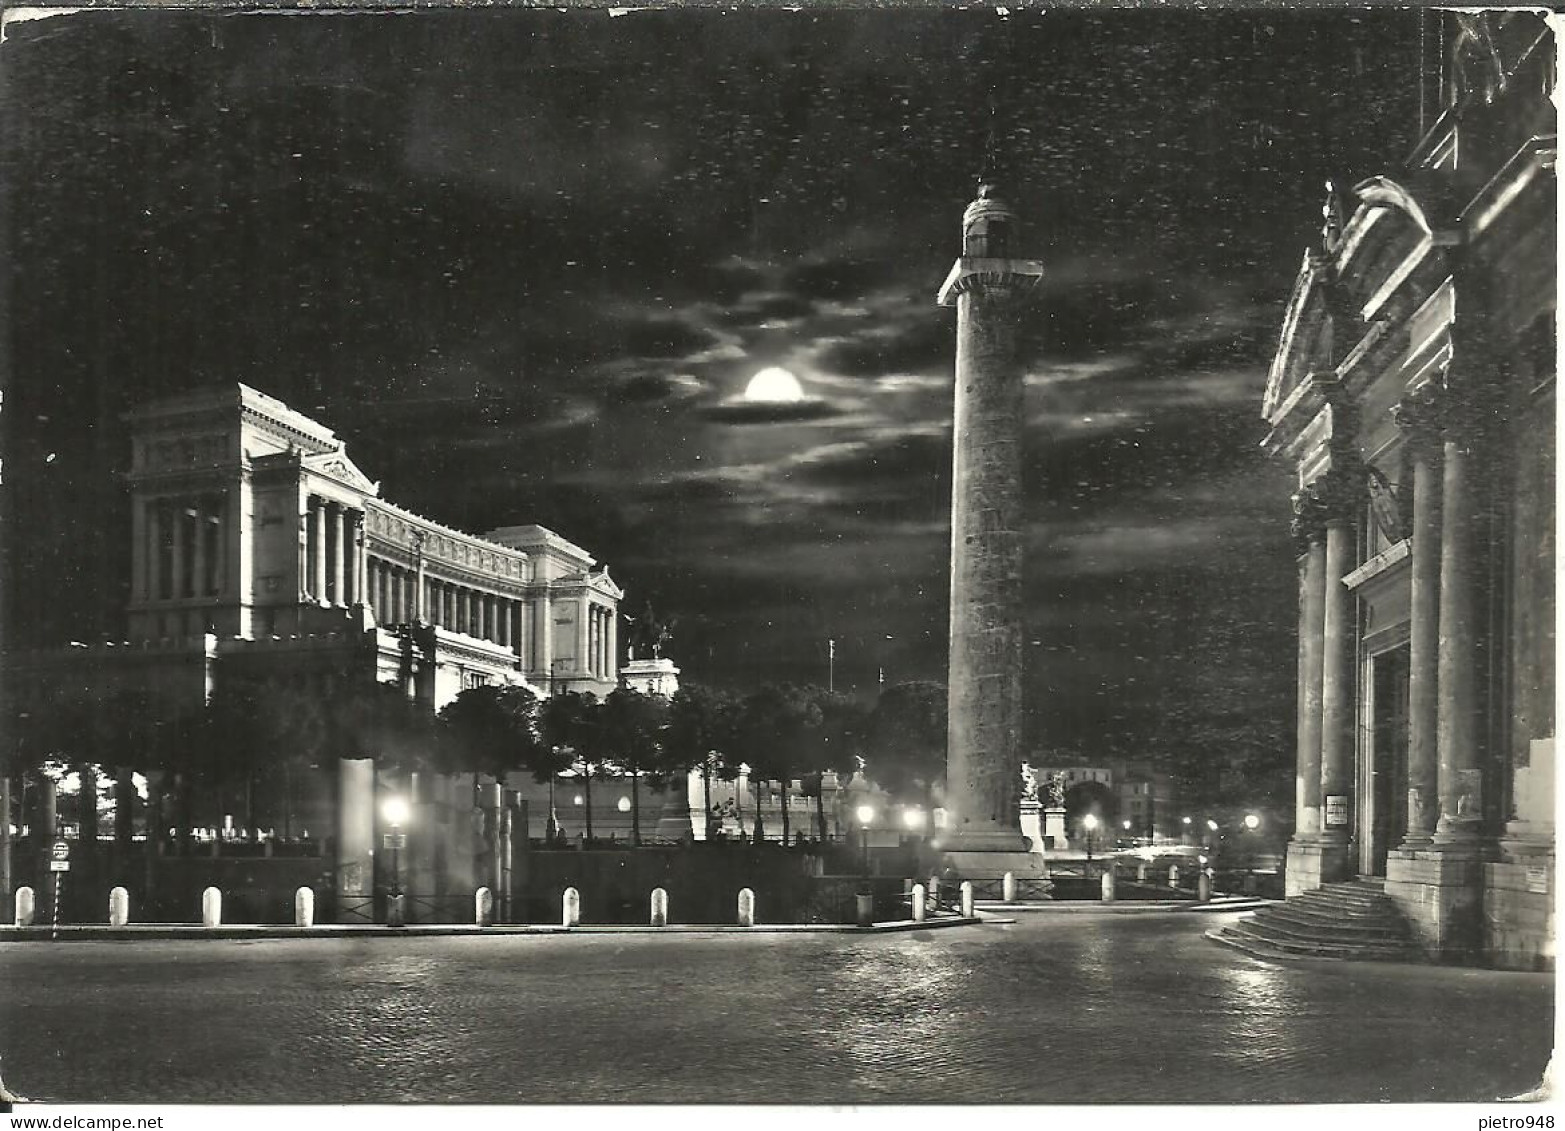 Roma (Lazio) Colonna E Foro Traiano E Altare Della Patria (Monumento A Vittorio Emanuele II), Notturno, By Night - Altare Della Patria